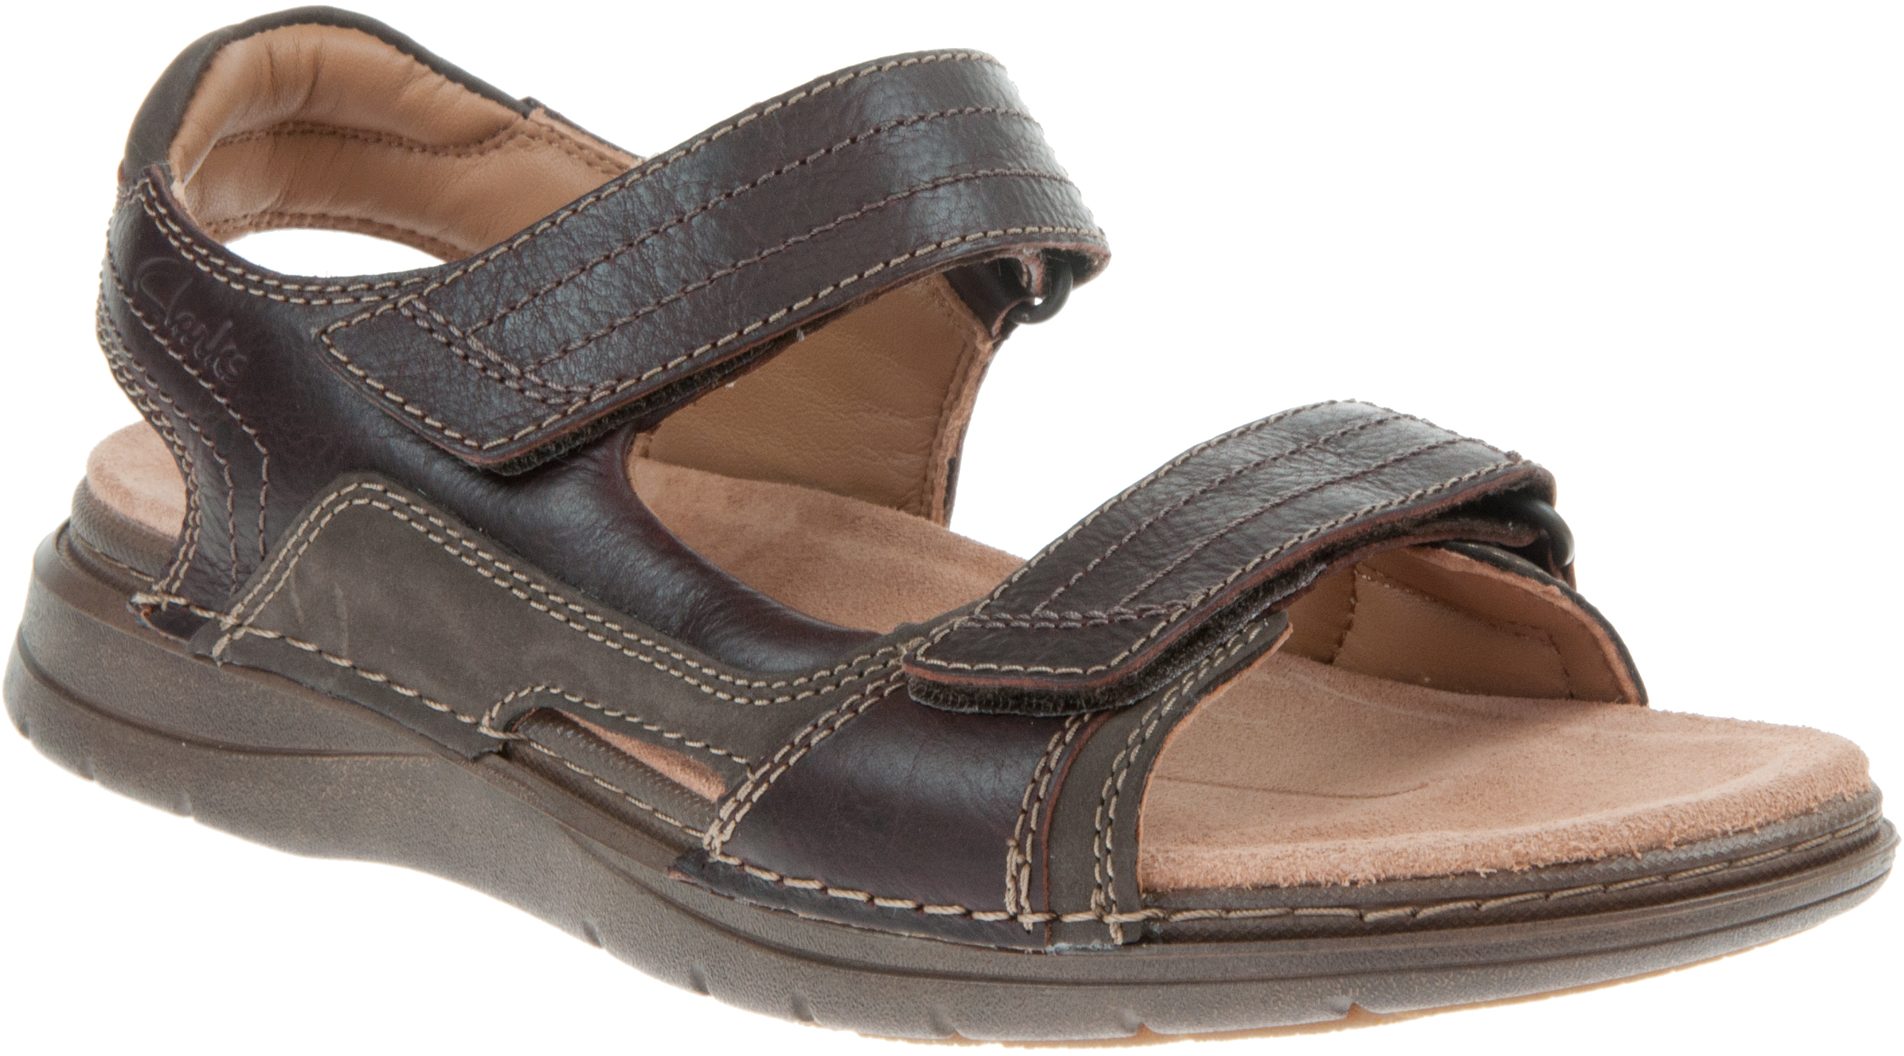 Clarks Nature Trek Mahogany Combi 26159194 - Full Sandals - Humphries Shoes